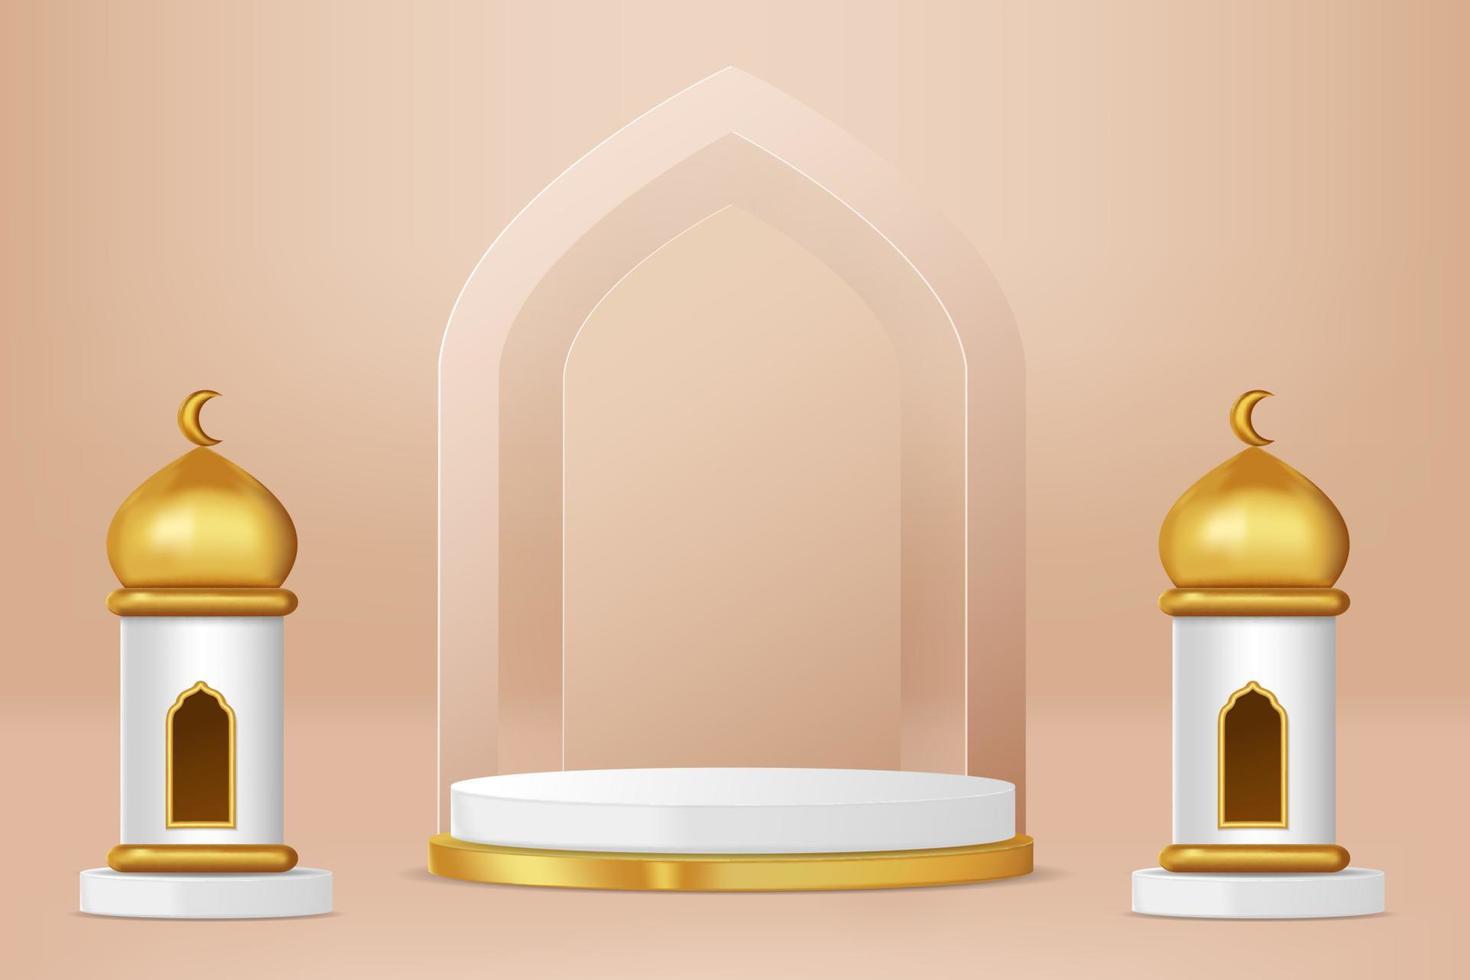 sfondo islamico della decorazione del podio con ornamento islamico. illustrazione 3d vettoriale